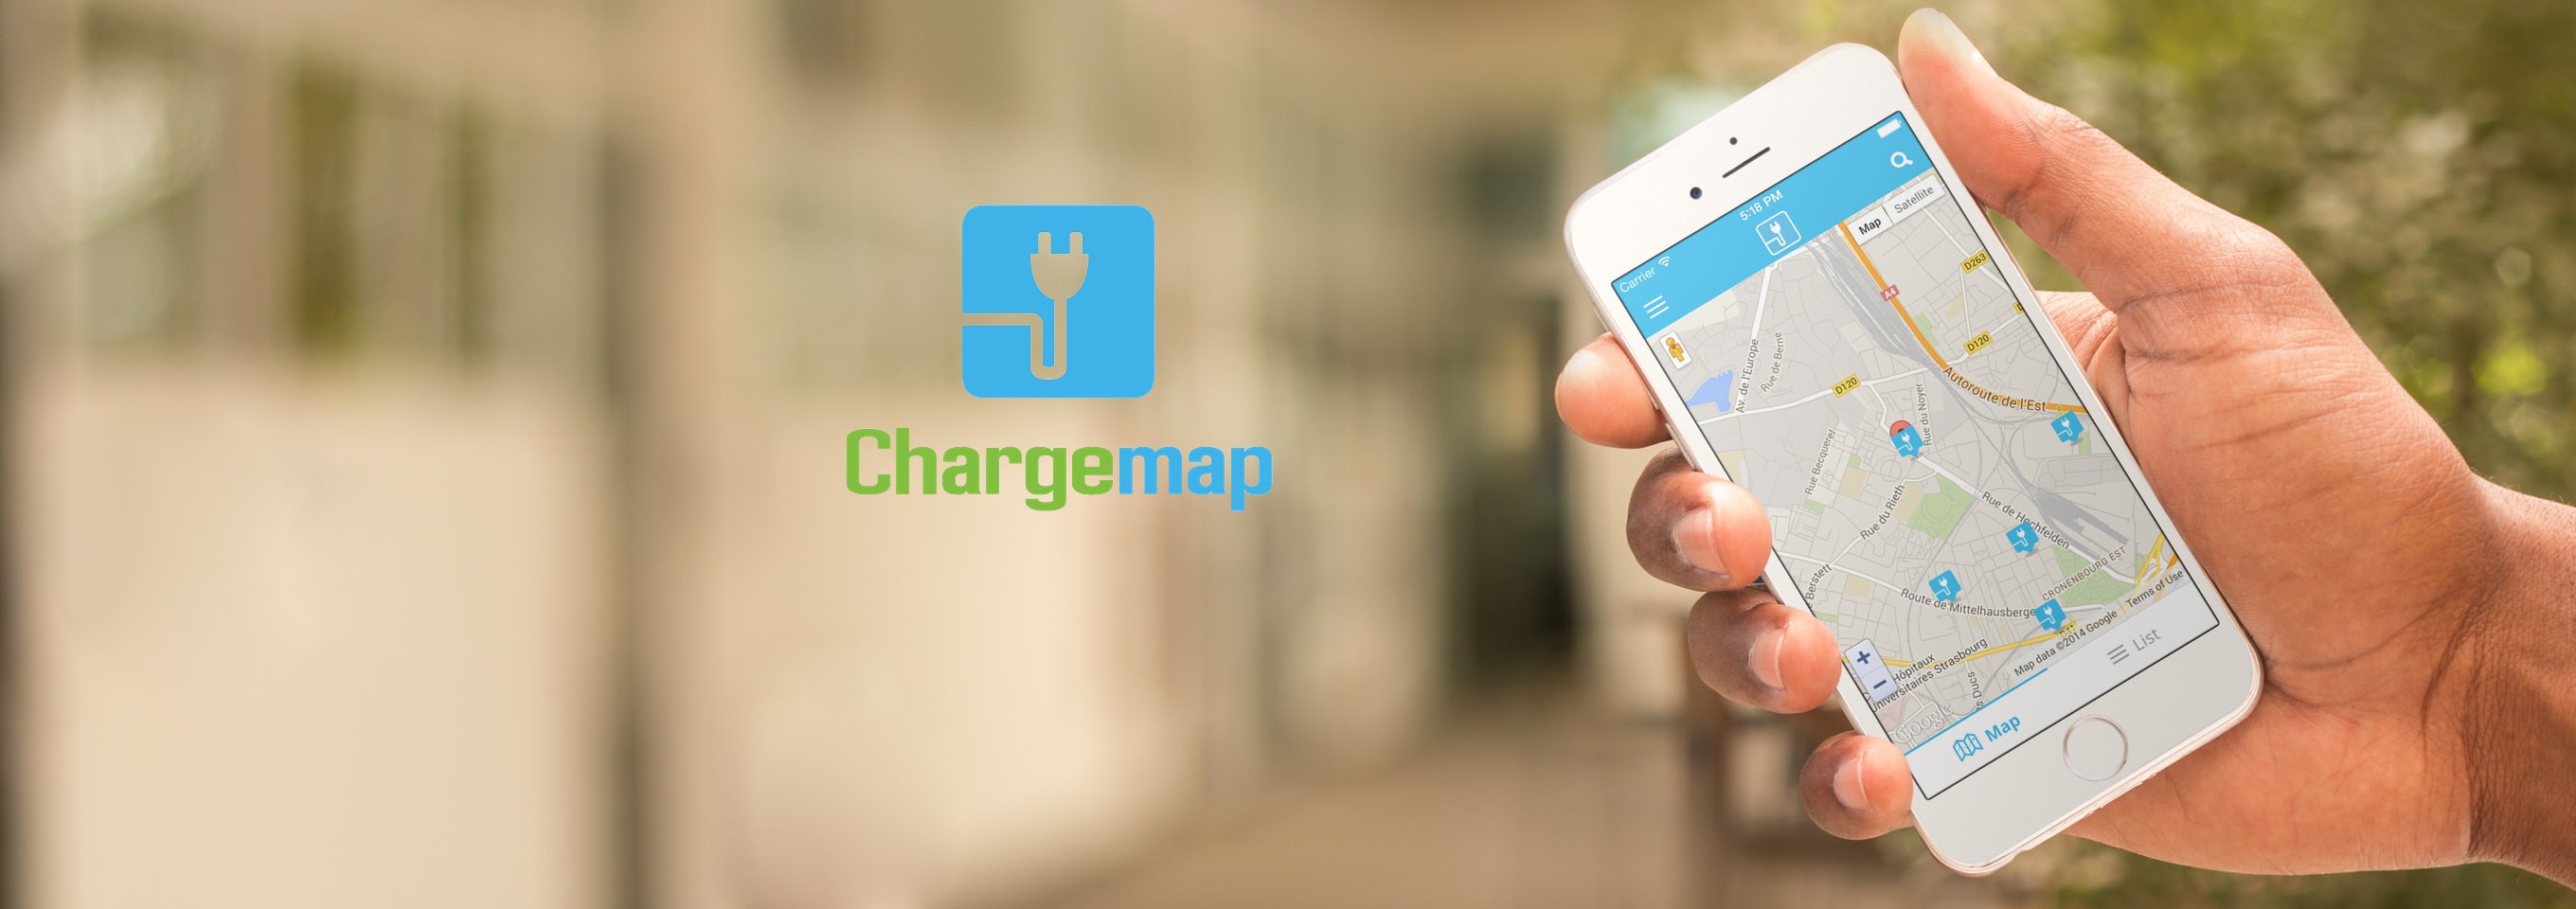 Chargemap – Die Datenbank für Ladestationen